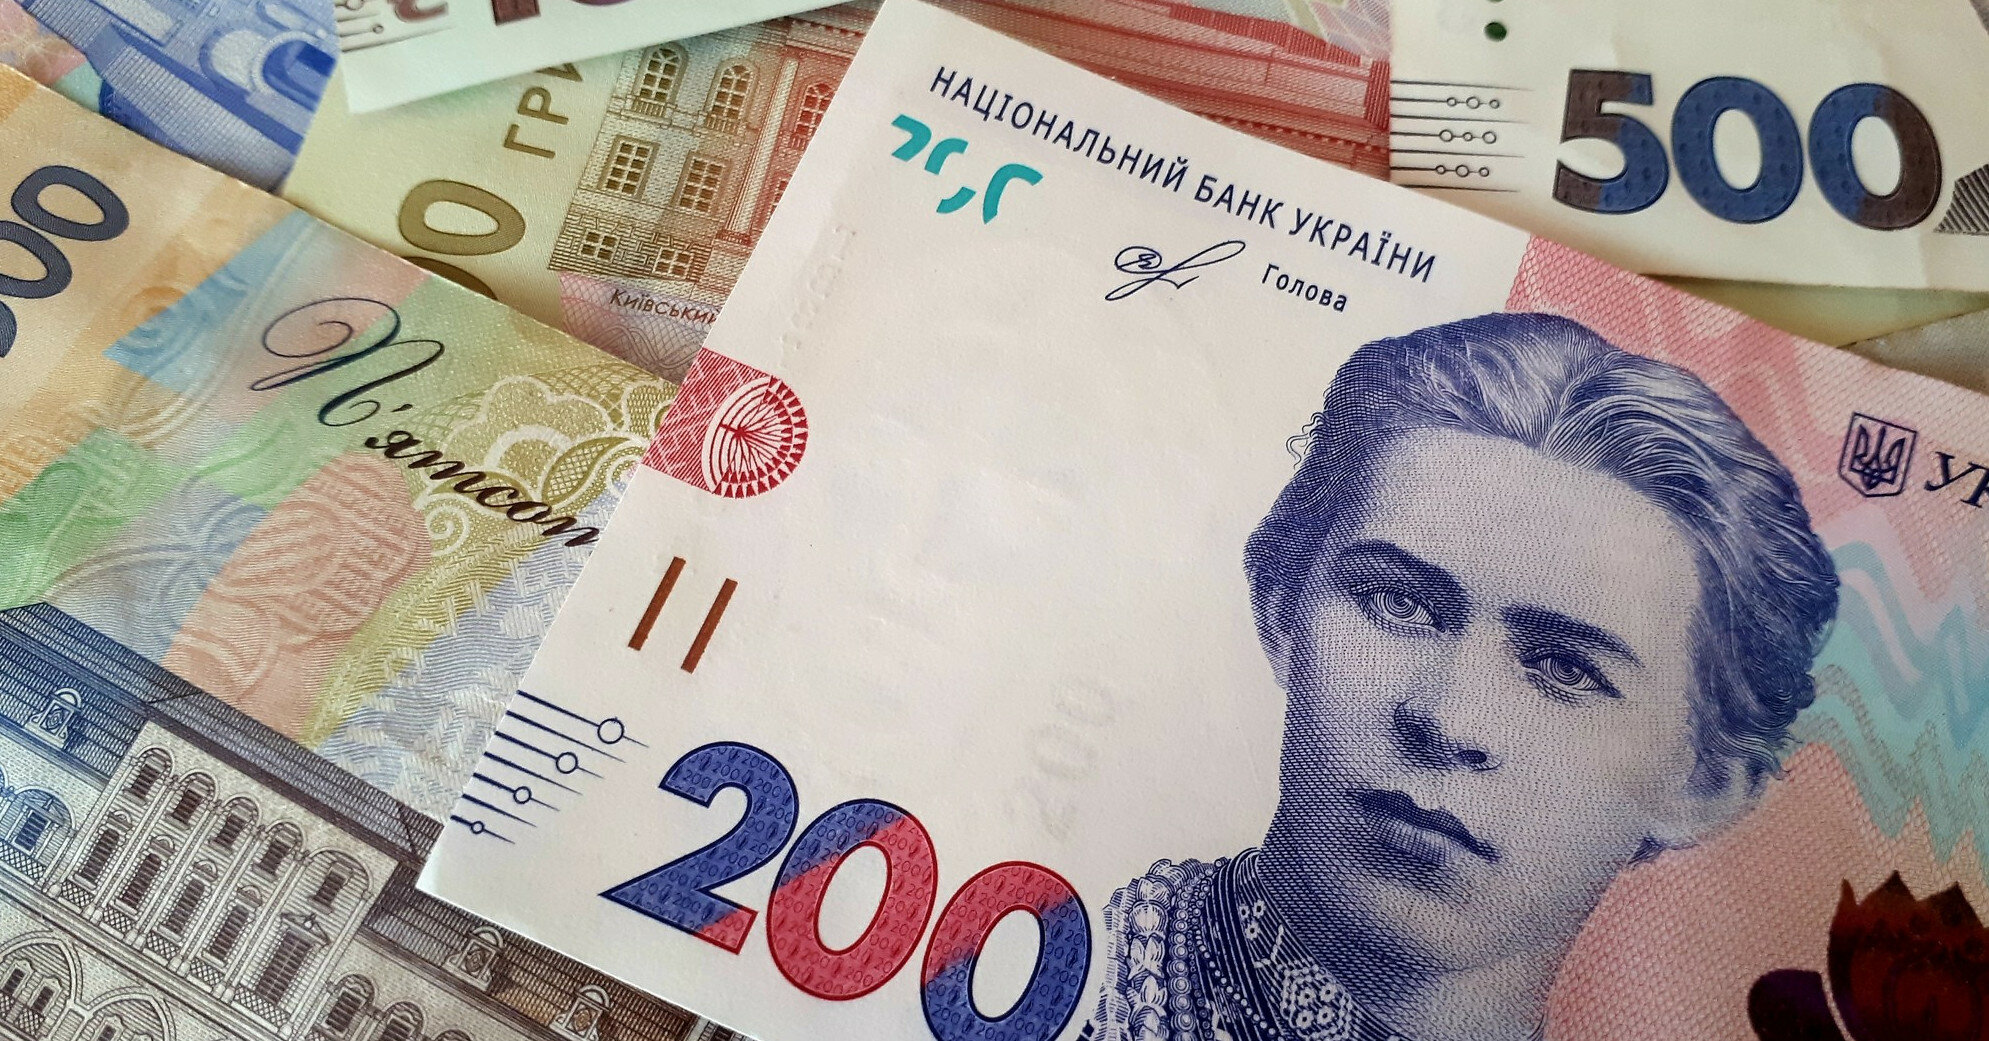 Портфель ОВДП українських банків зменшився